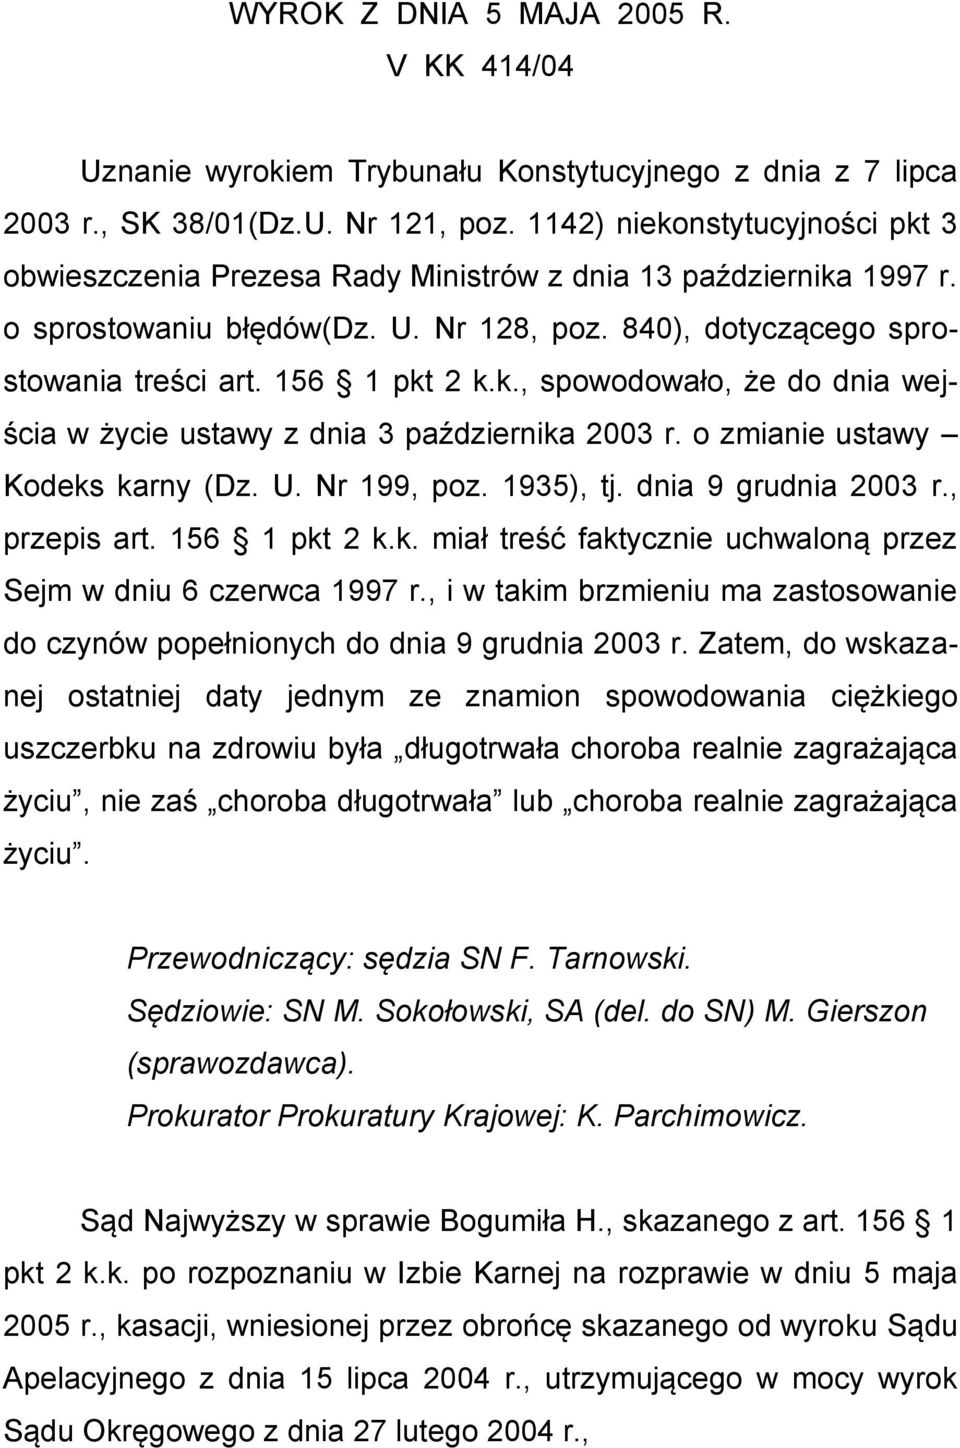 k., spowodowało, że do dnia wejścia w życie ustawy z dnia 3 października 2003 r. o zmianie ustawy Kodeks karny (Dz. U. Nr 199, poz. 1935), tj. dnia 9 grudnia 2003 r., przepis art. 156 1 pkt 2 k.k. miał treść faktycznie uchwaloną przez Sejm w dniu 6 czerwca 1997 r.